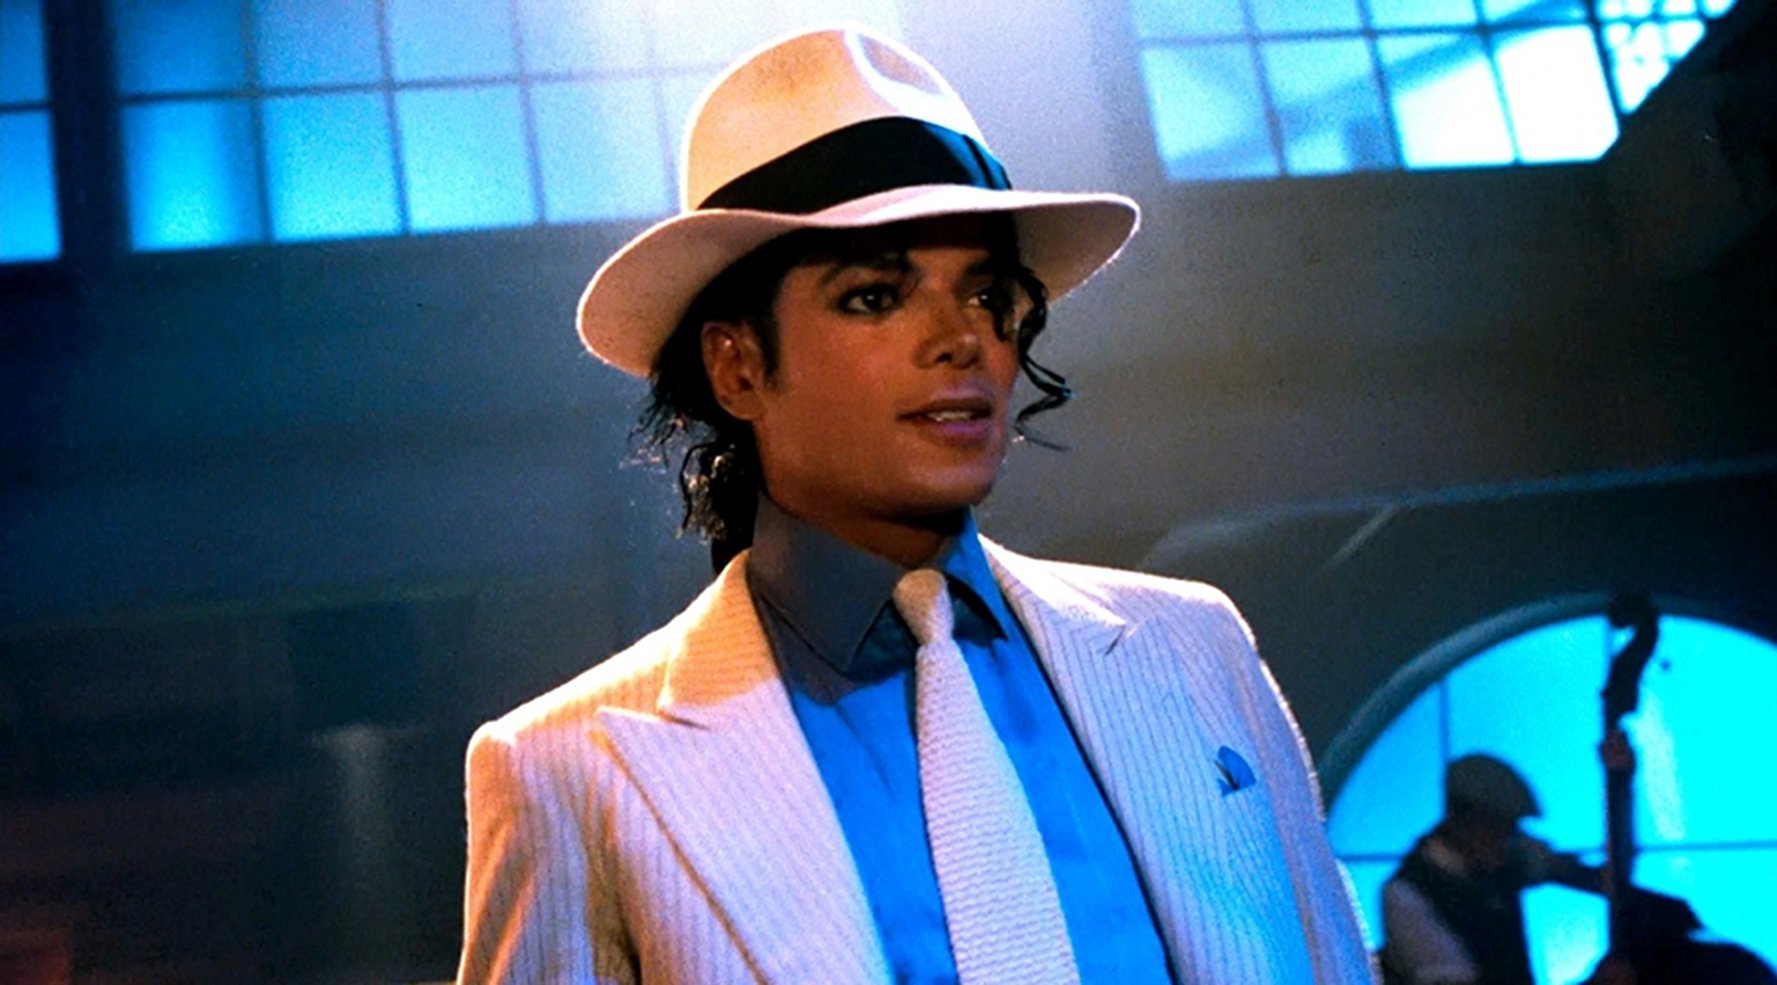 Ciemnoskóry mężczyzna z czarnymi lokami w białym kapeluszu, białym krawacie, niebieskiej koszuli i białej marynarce.